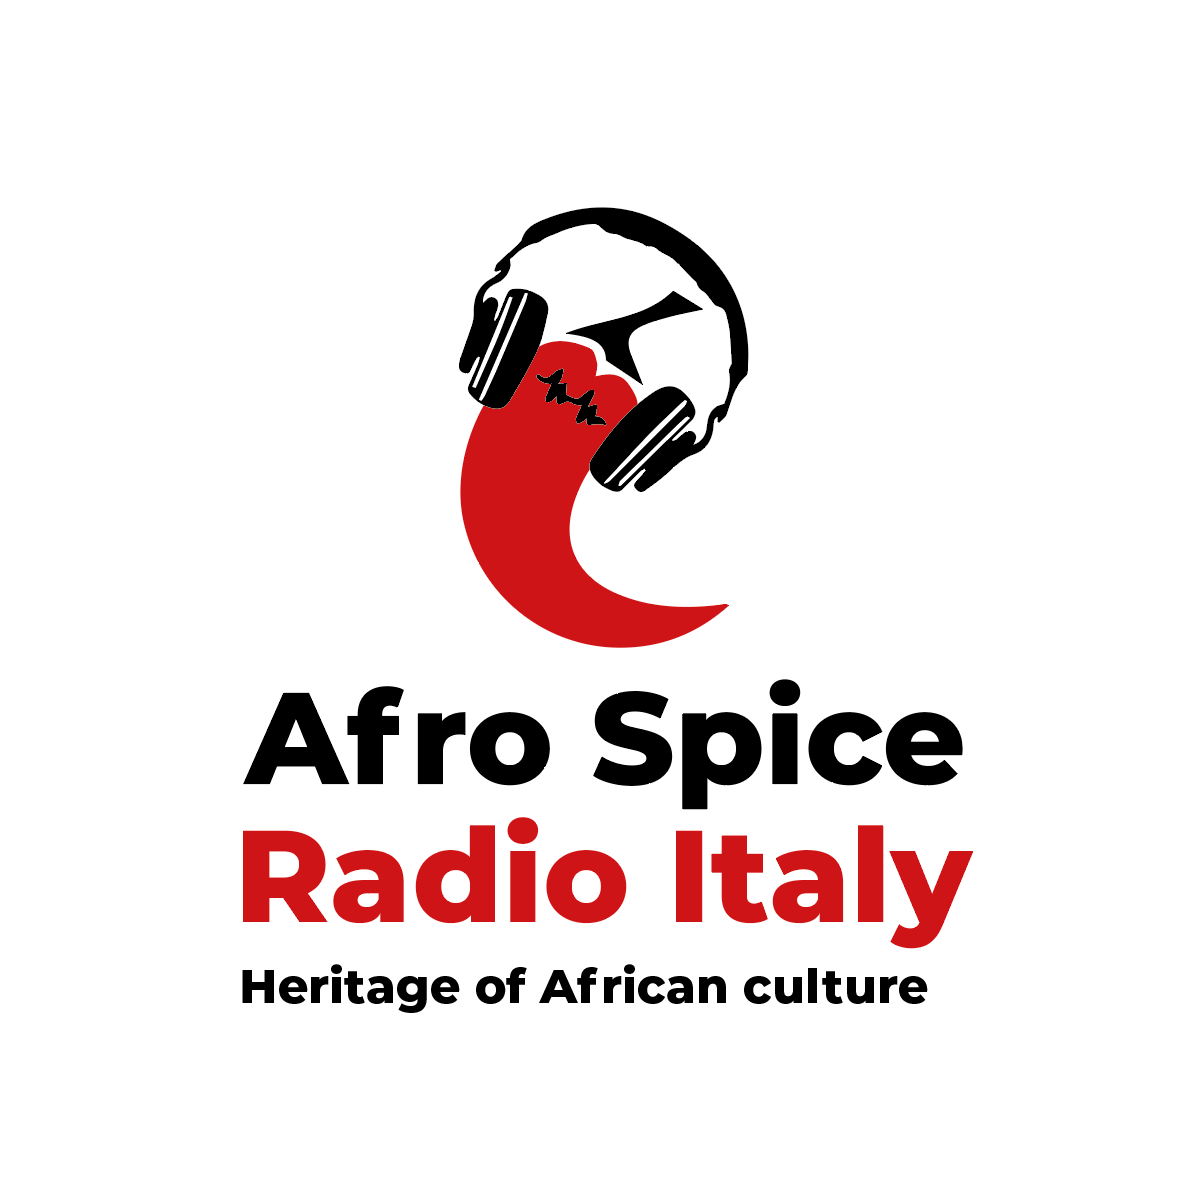 AfroSpice Radio Italy